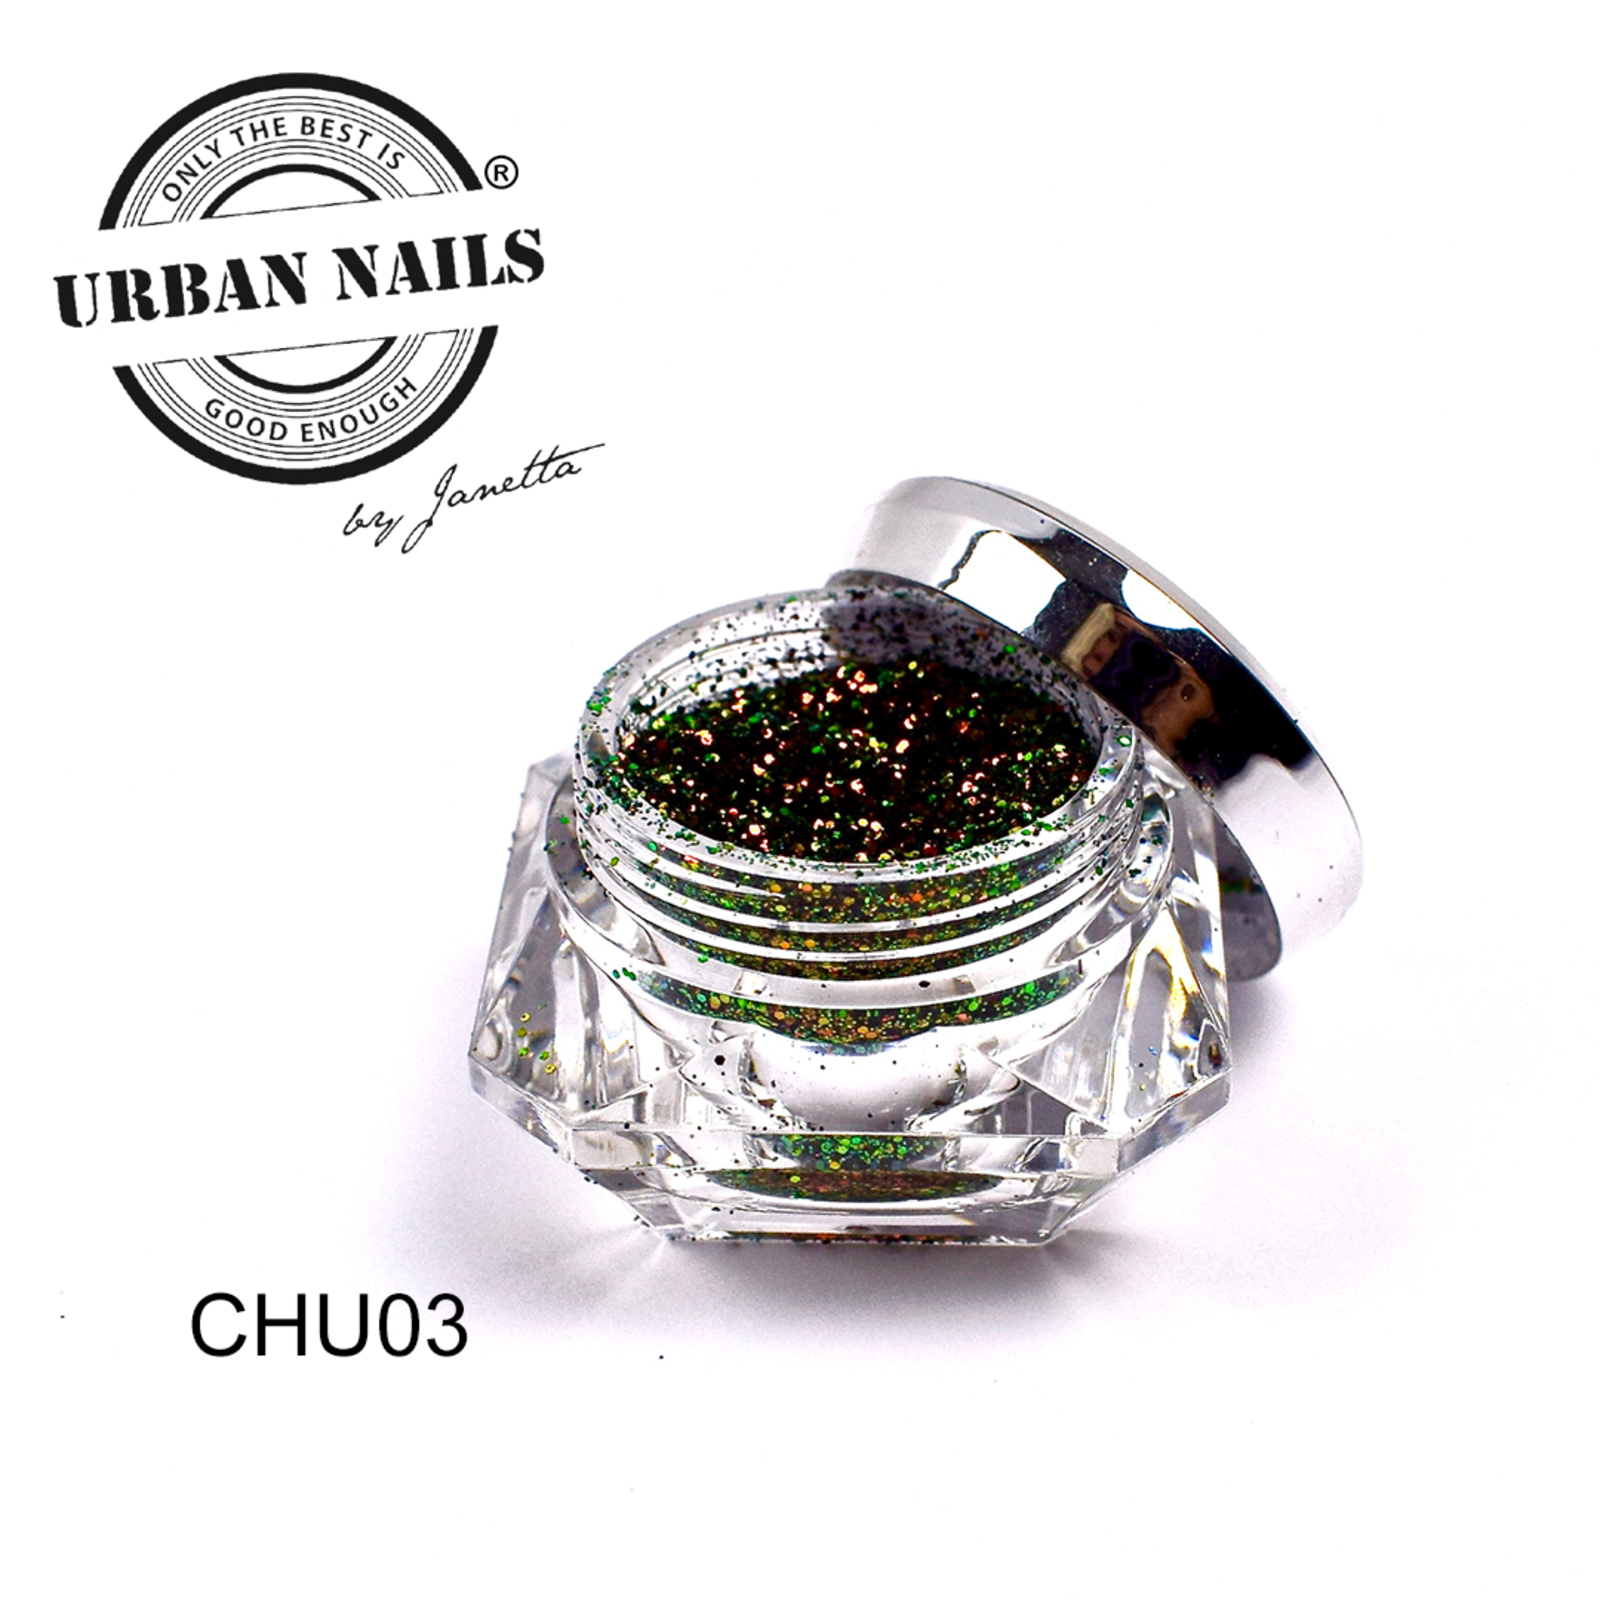 Urban nails Chuncky chameleon glitter 03